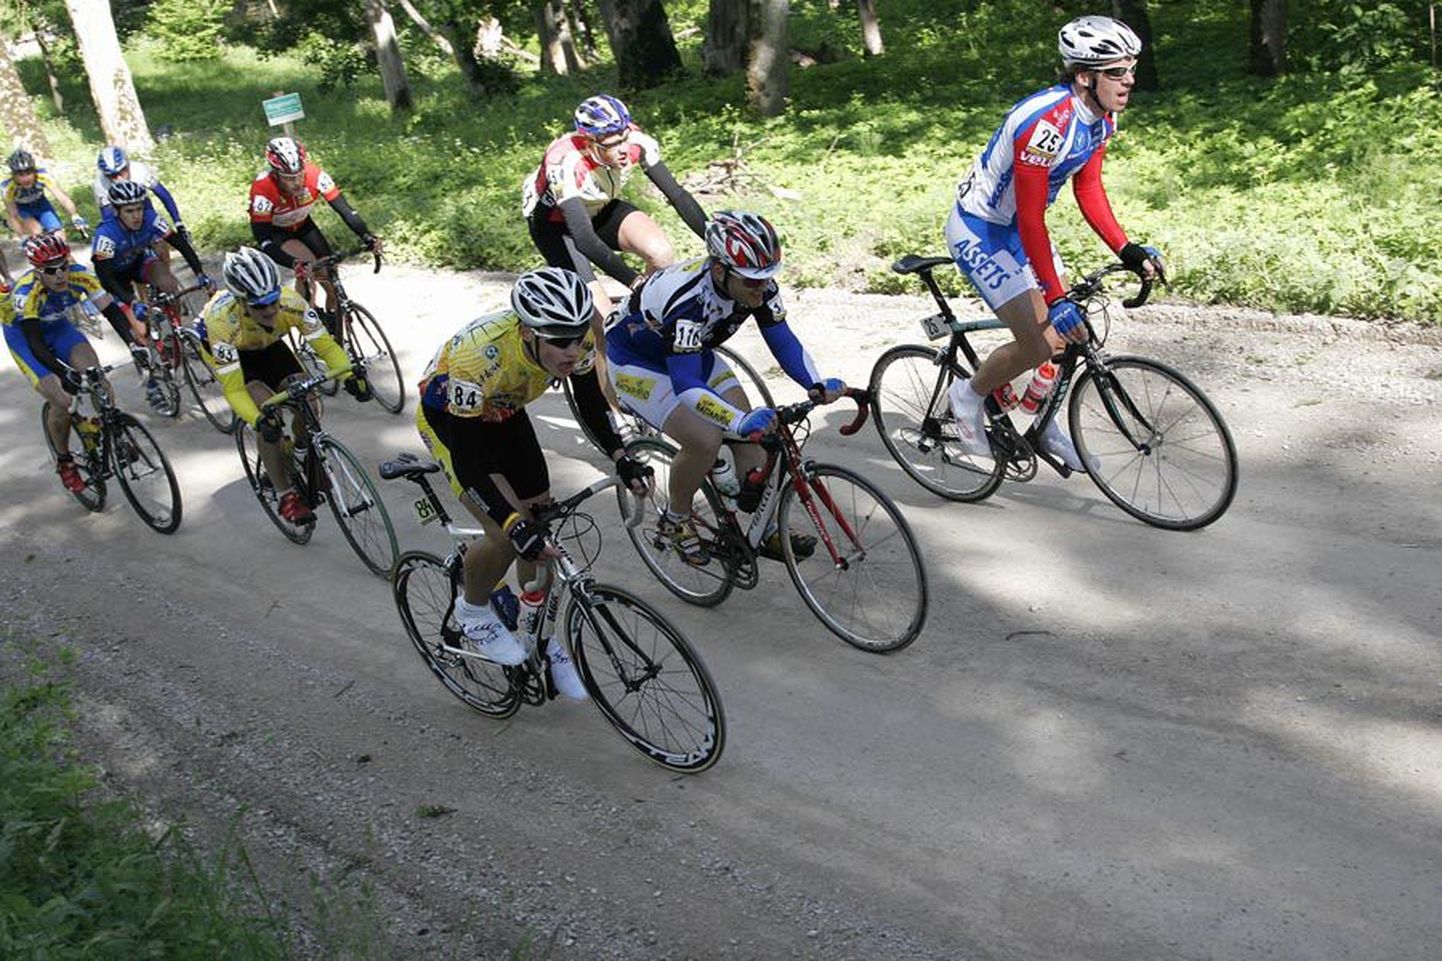 Pilt on tehtud Heimtalis esimese etapi ainsal kruuskattega lõigul teise mäefiniši eel, mil sõitjatel oli läbitud 105 kilomeetrit.